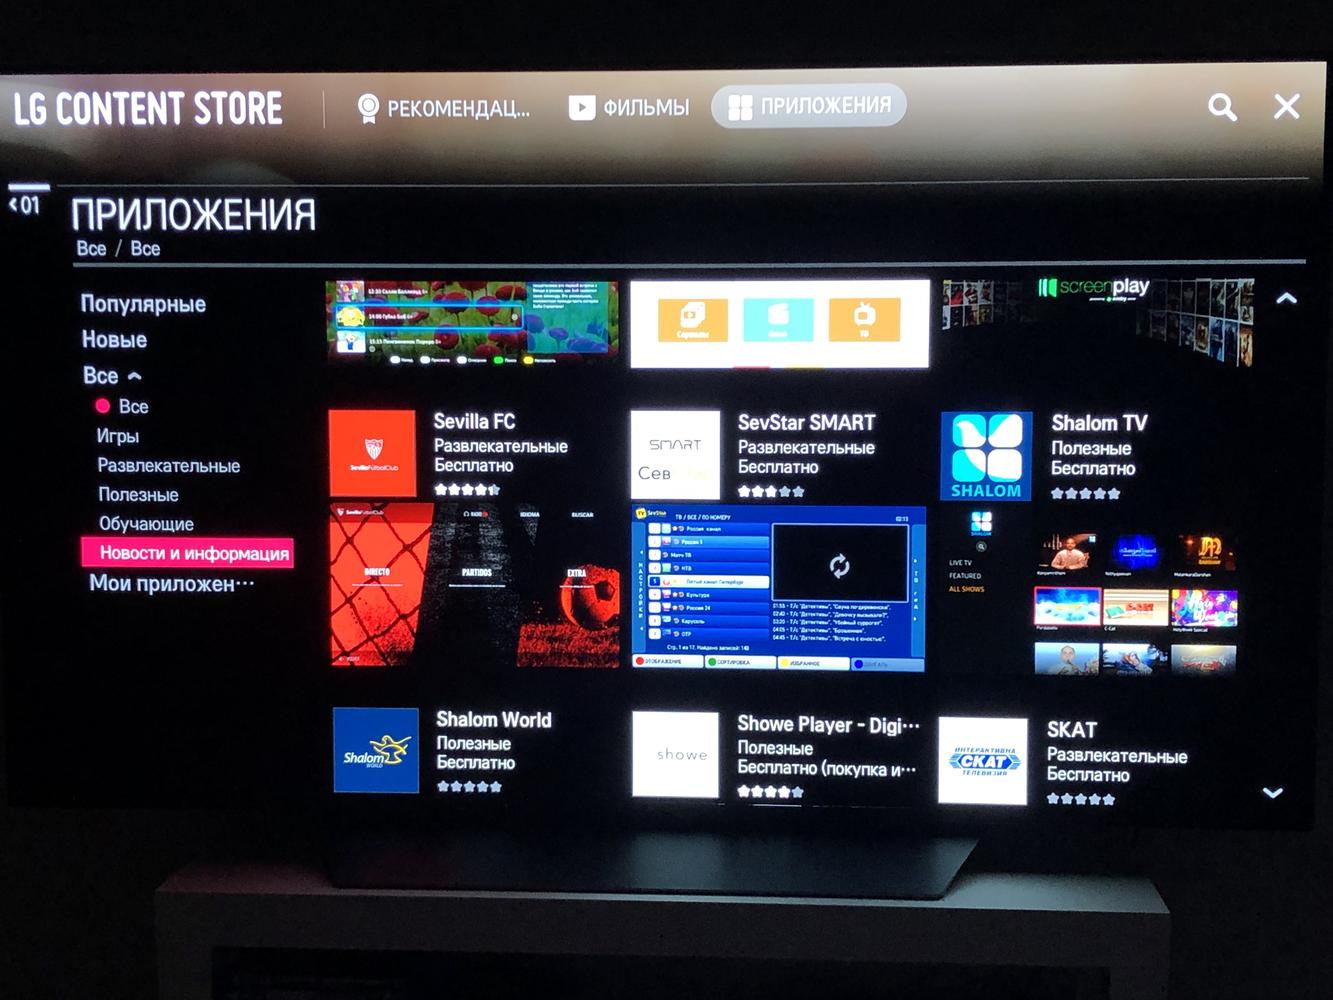 Премьер на телевизоре самсунг. LG Smart Store TV приложения. LG content Store Smart TV. Samsung телевизор магазин приложений. Приложение премьер для смарт ТВ самсунг.